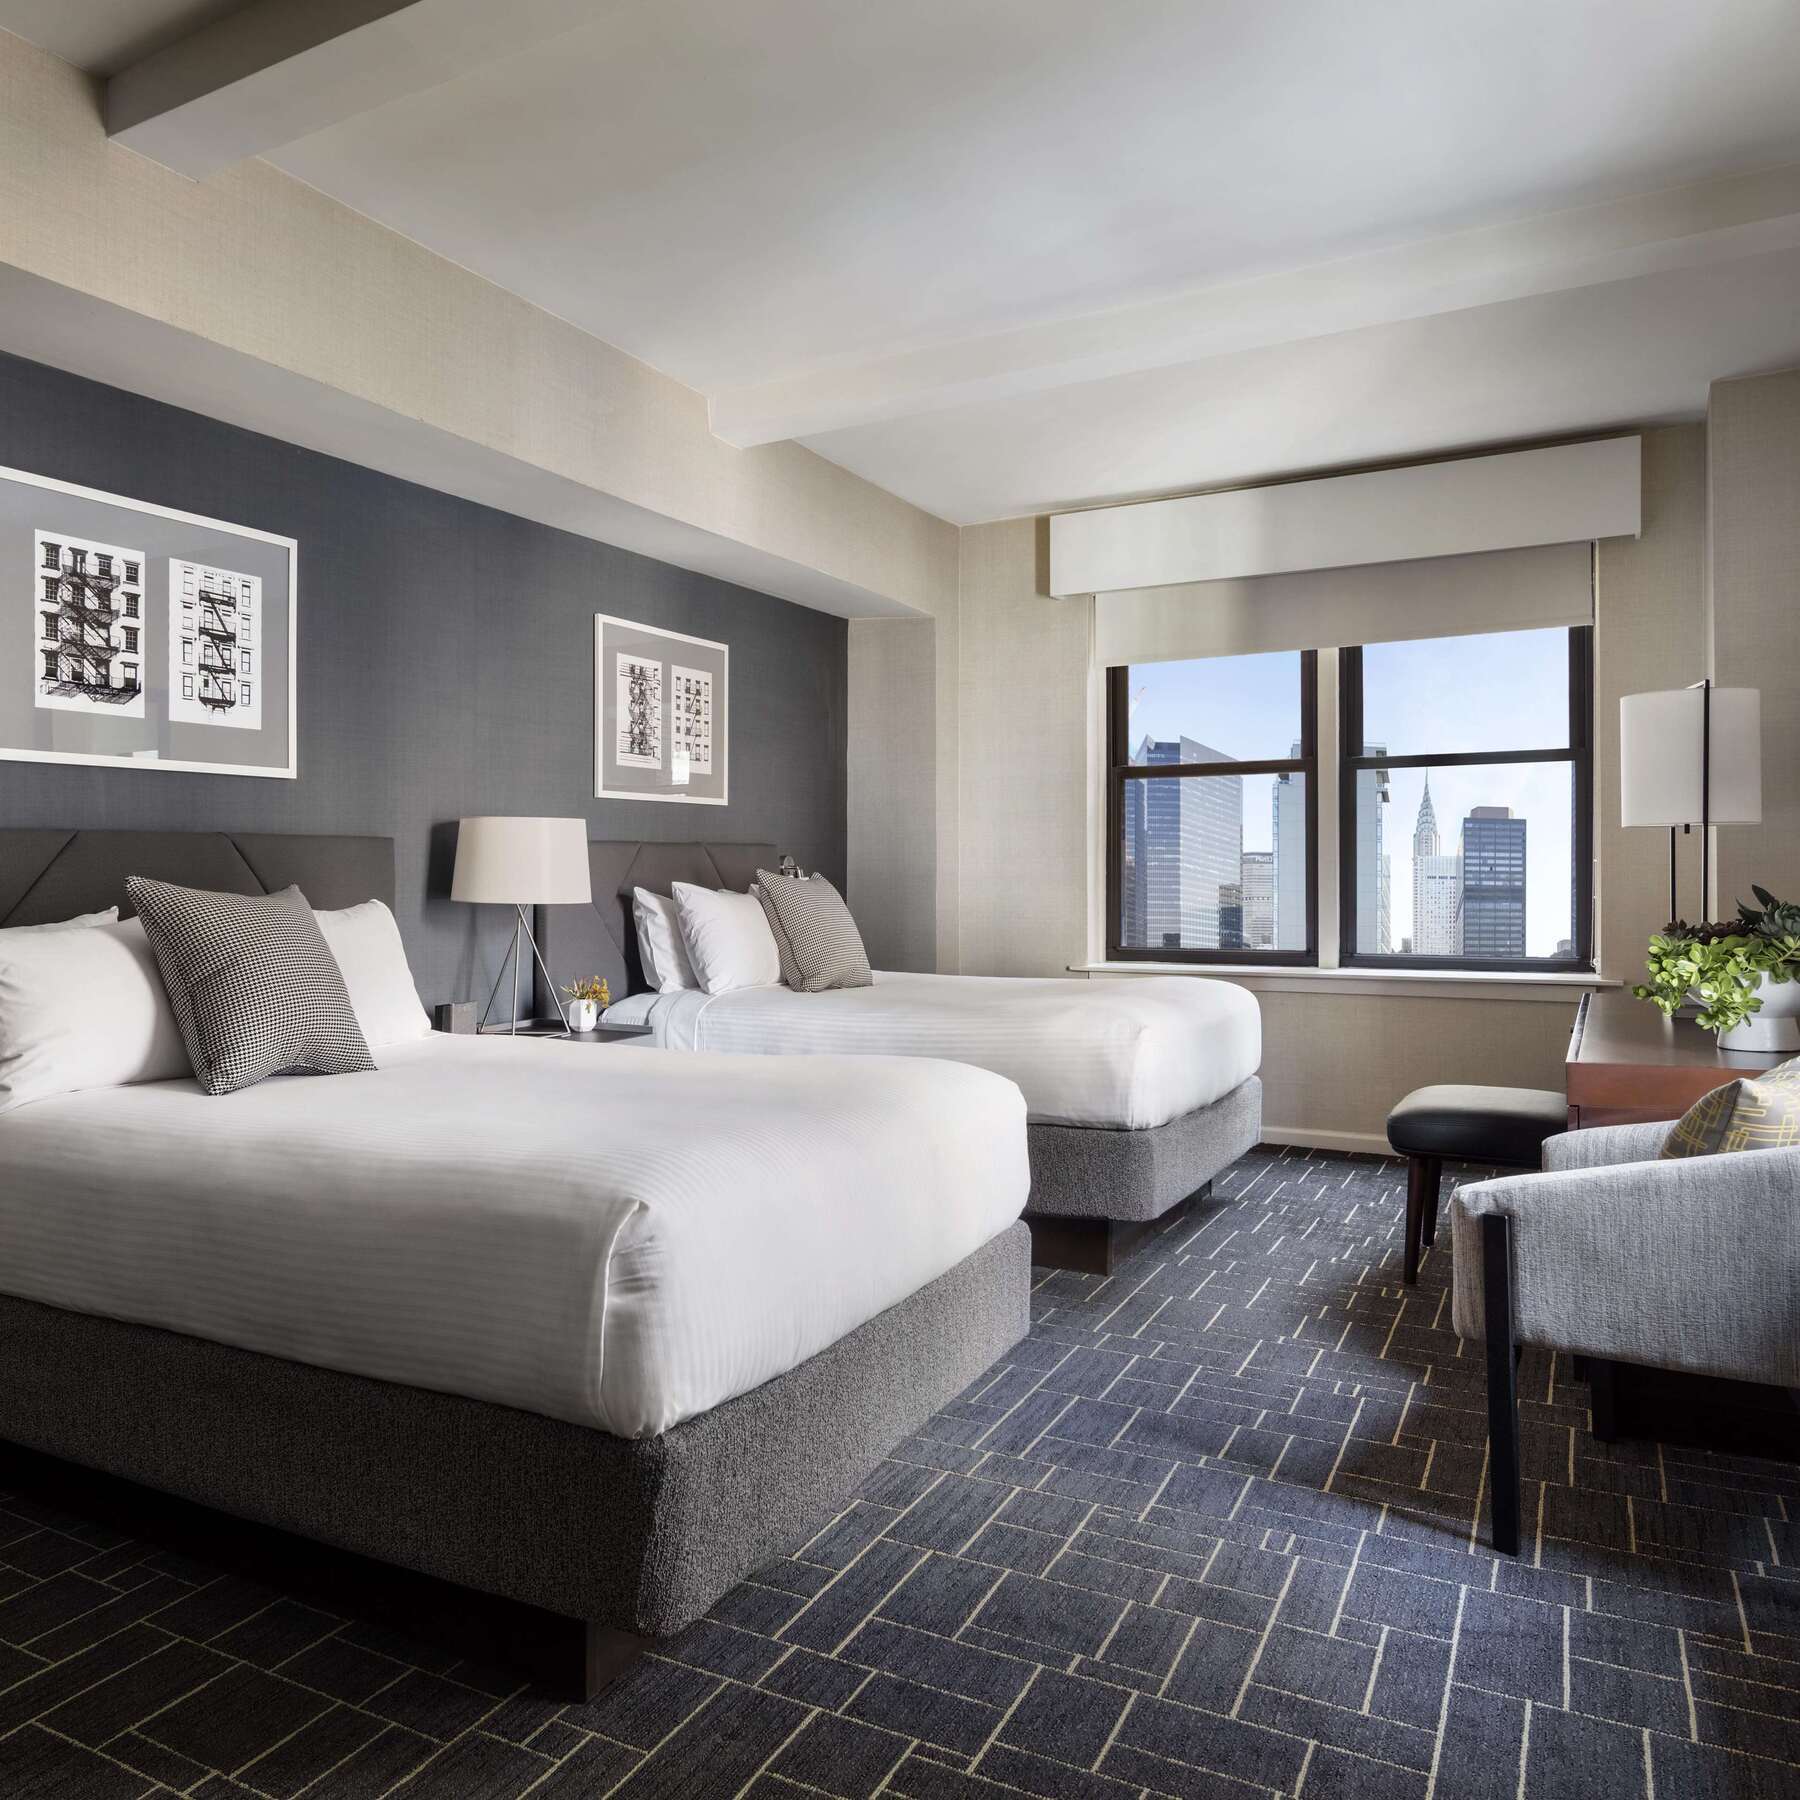 The Shelburne Sonesta New York Hotel Room photo